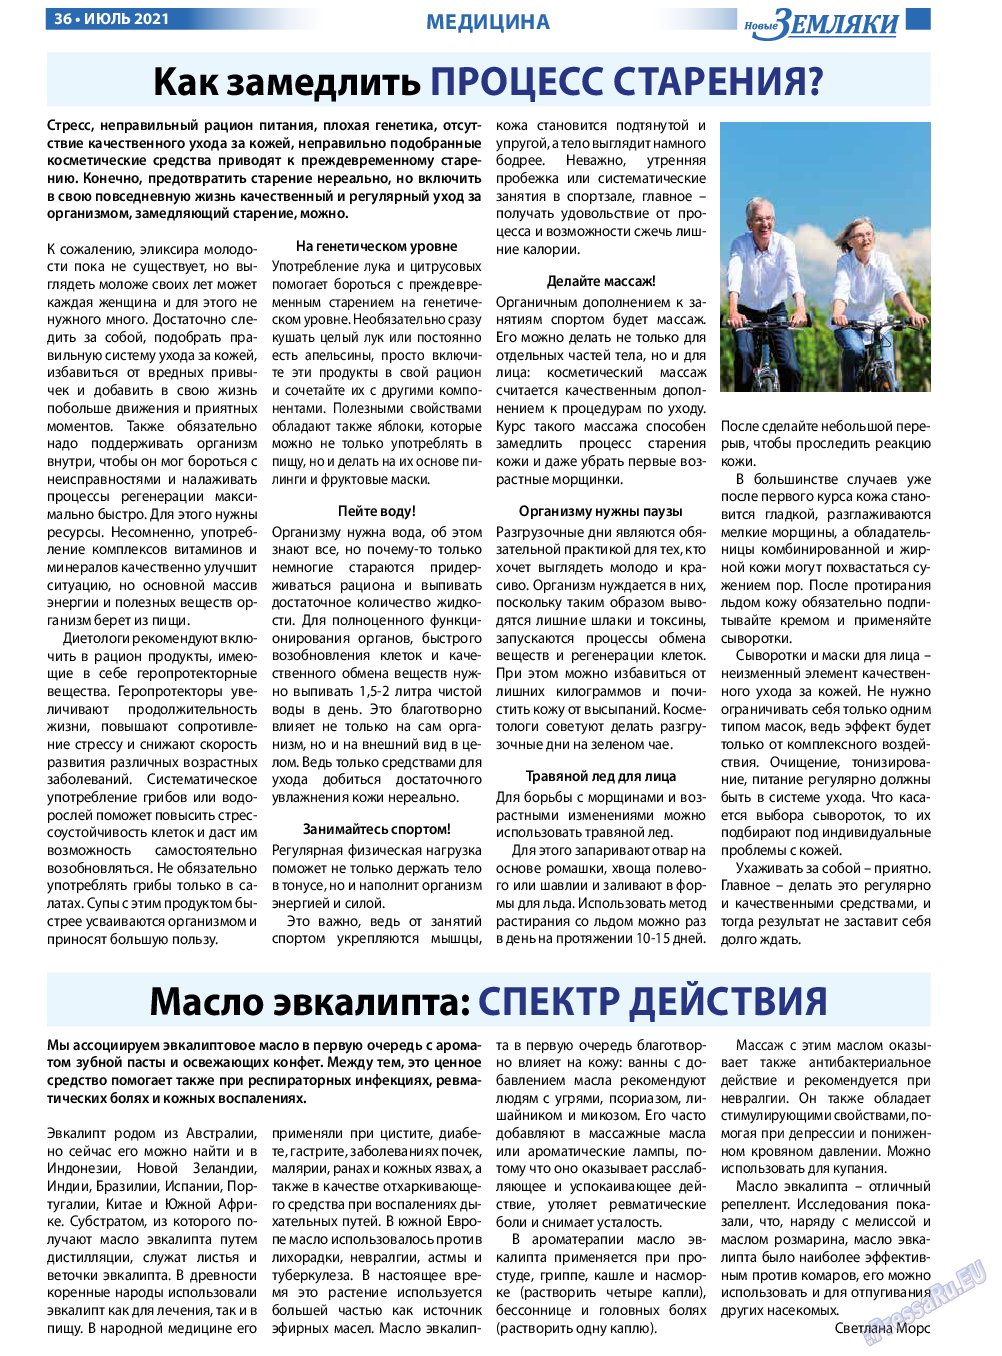 Новые Земляки, газета. 2021 №7 стр.36